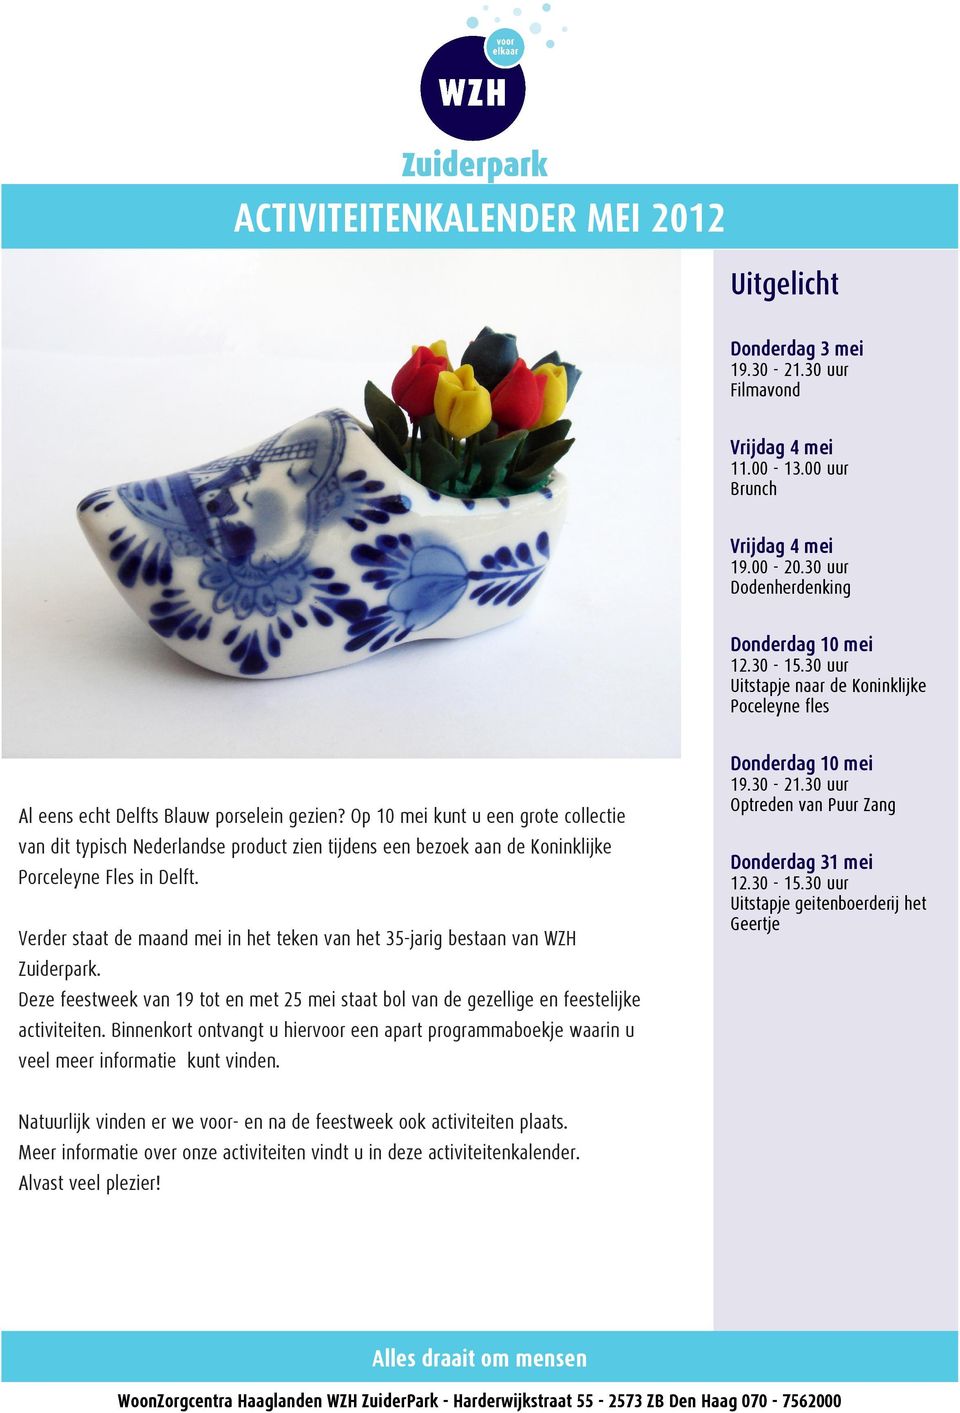 Op 10 mei kunt u een grote collectie van dit typisch Nederlandse product zien tijdens een bezoek aan de Koninklijke Porceleyne Fles in Delft.